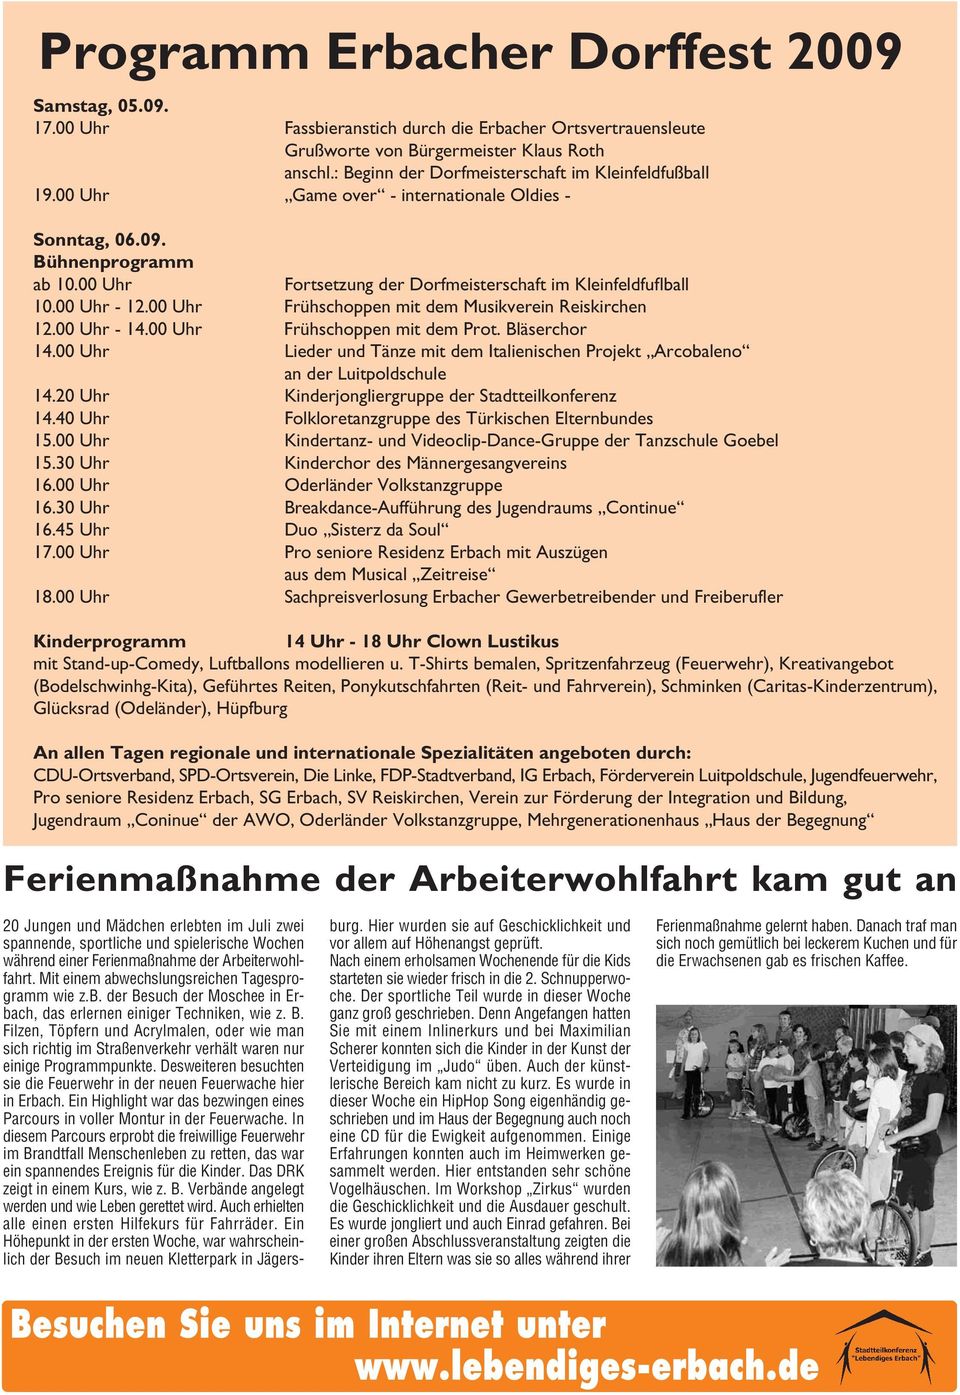 00 Uhr - 12.00 Uhr Frühschoppen mit dem Musikverein Reiskirchen 12.00 Uhr - 14.00 Uhr Frühschoppen mit dem Prot. Bläserchor 14.